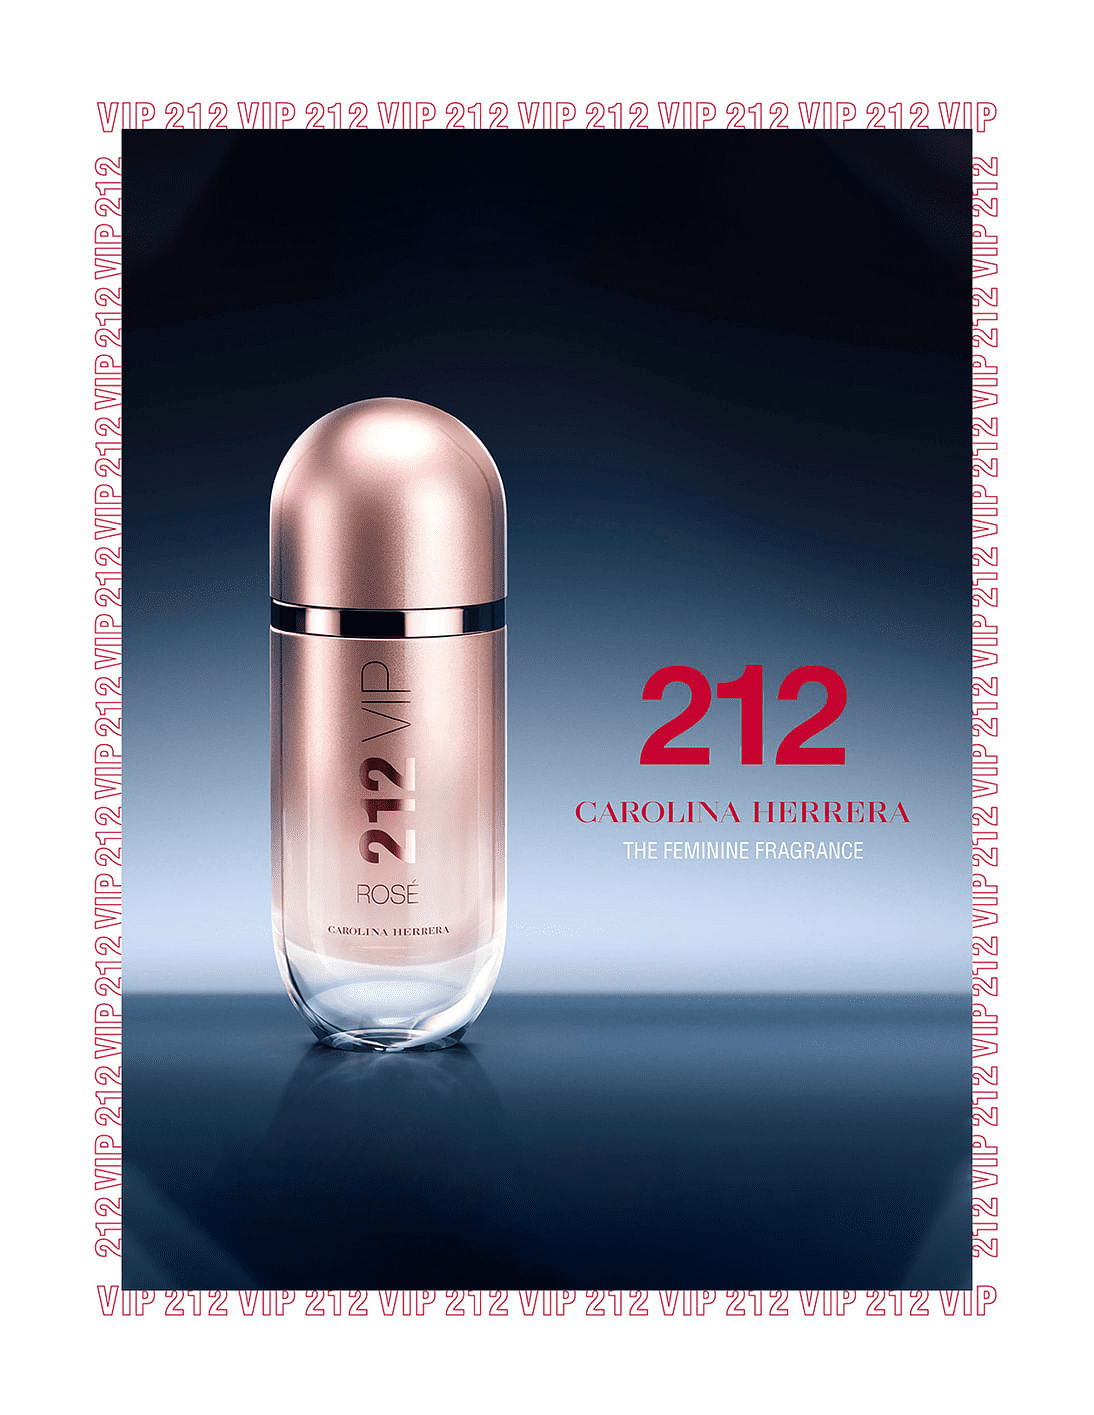 Spray Eau Parfum for 212 Women Herrera Carolina oz Rose De VIP 2.7